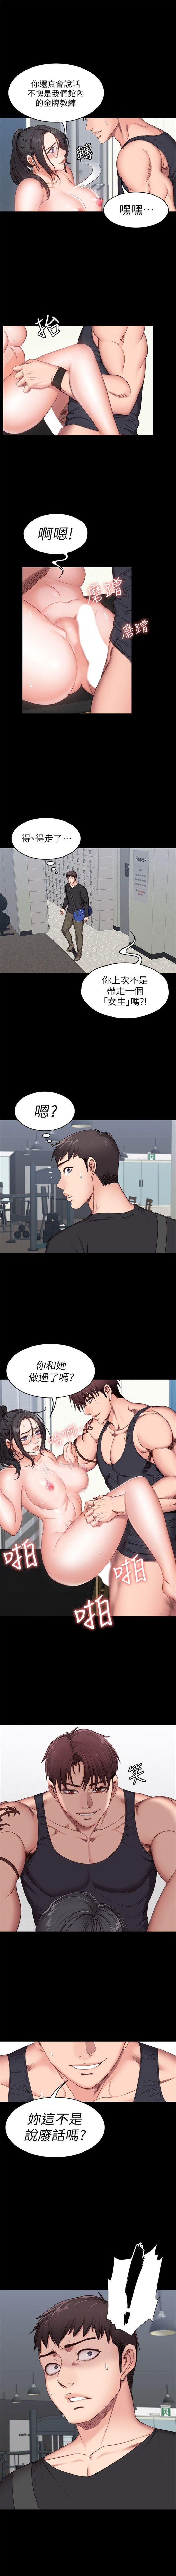 健身教练 1-28 中文翻译 （更新中） 30